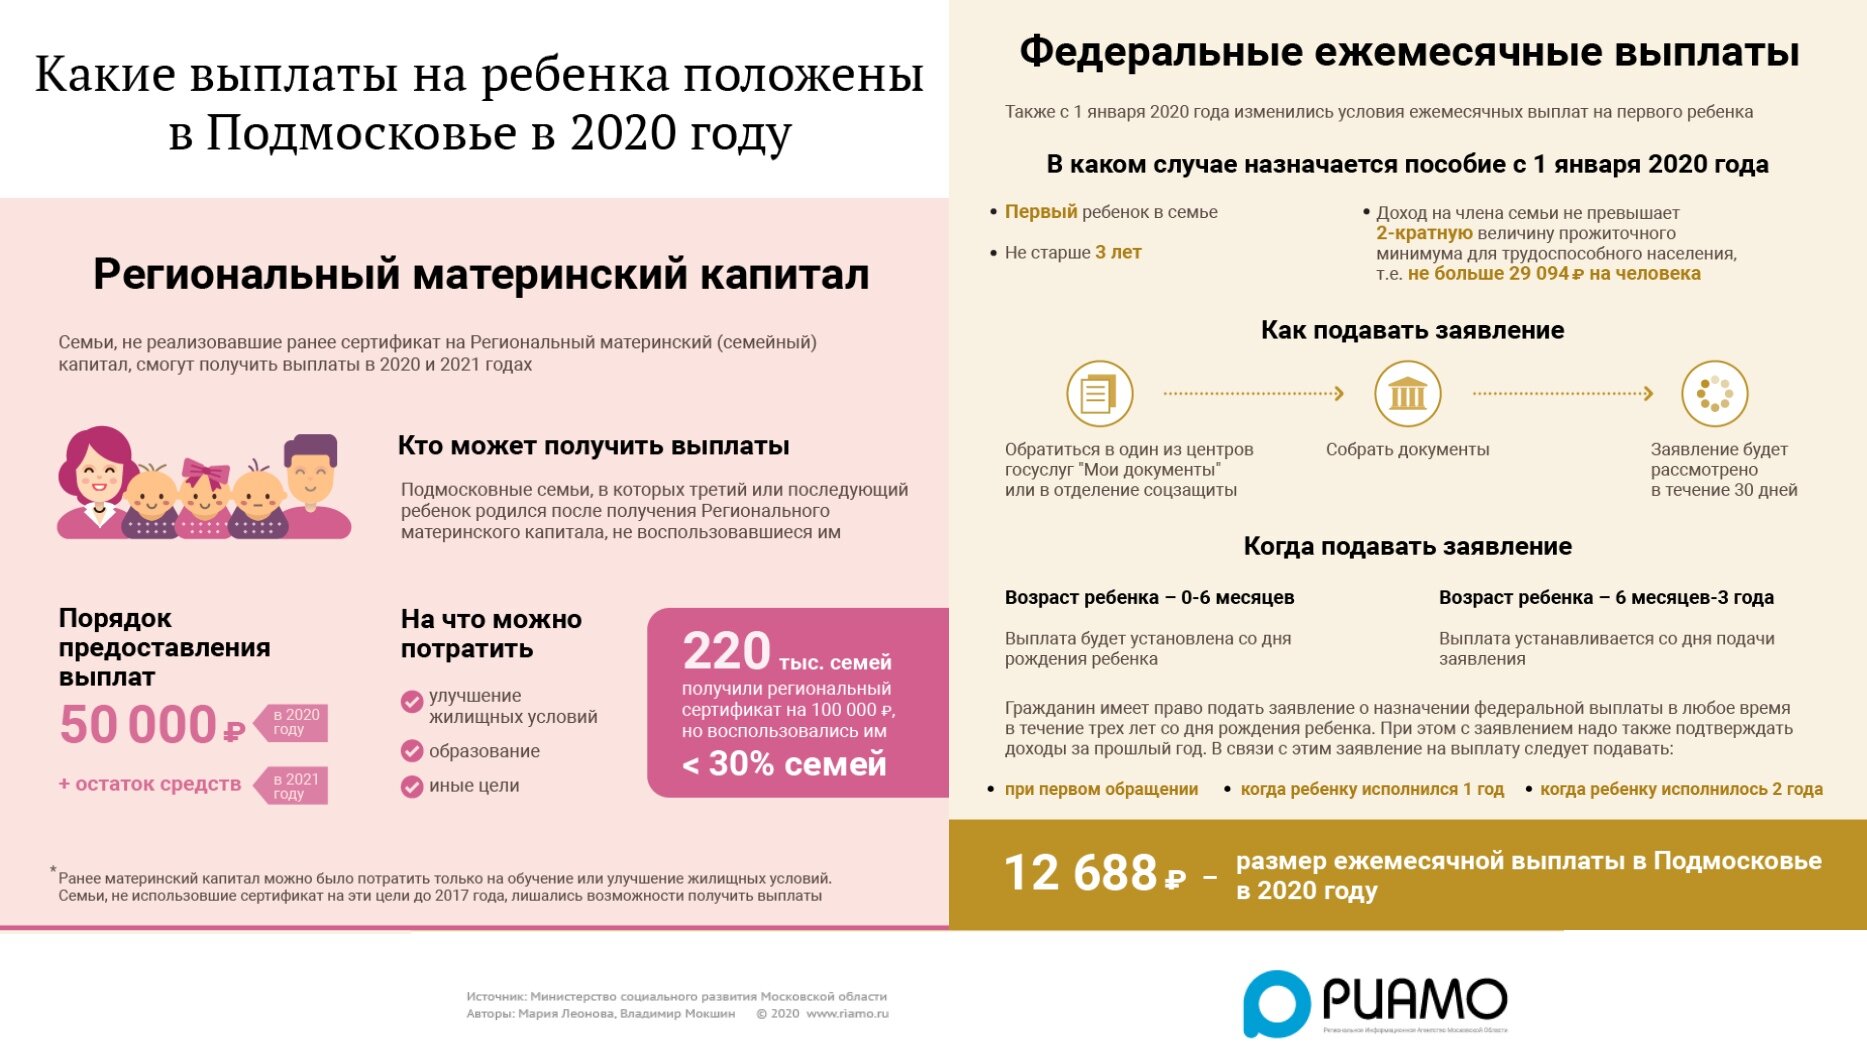 Сбербанк: прочие выплаты 7 rus, 07, 09 – что это?